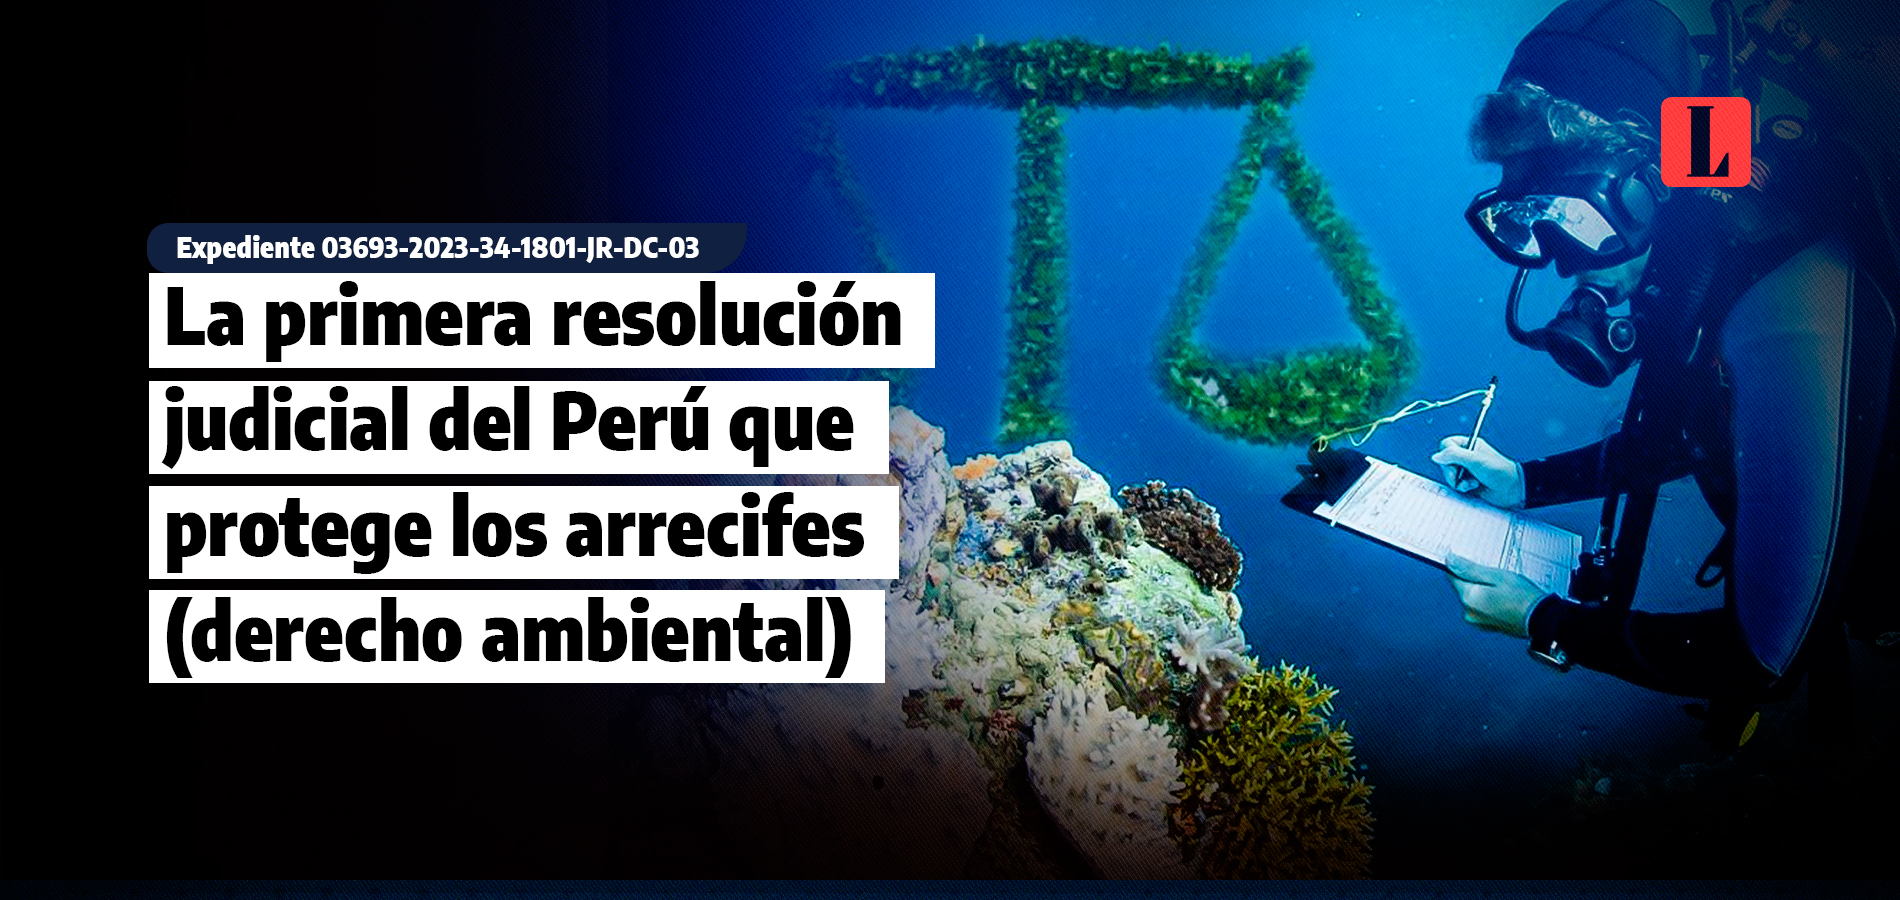 La primera resolución judicial del Perú que protege a los arrecifes (derecho ambiental)